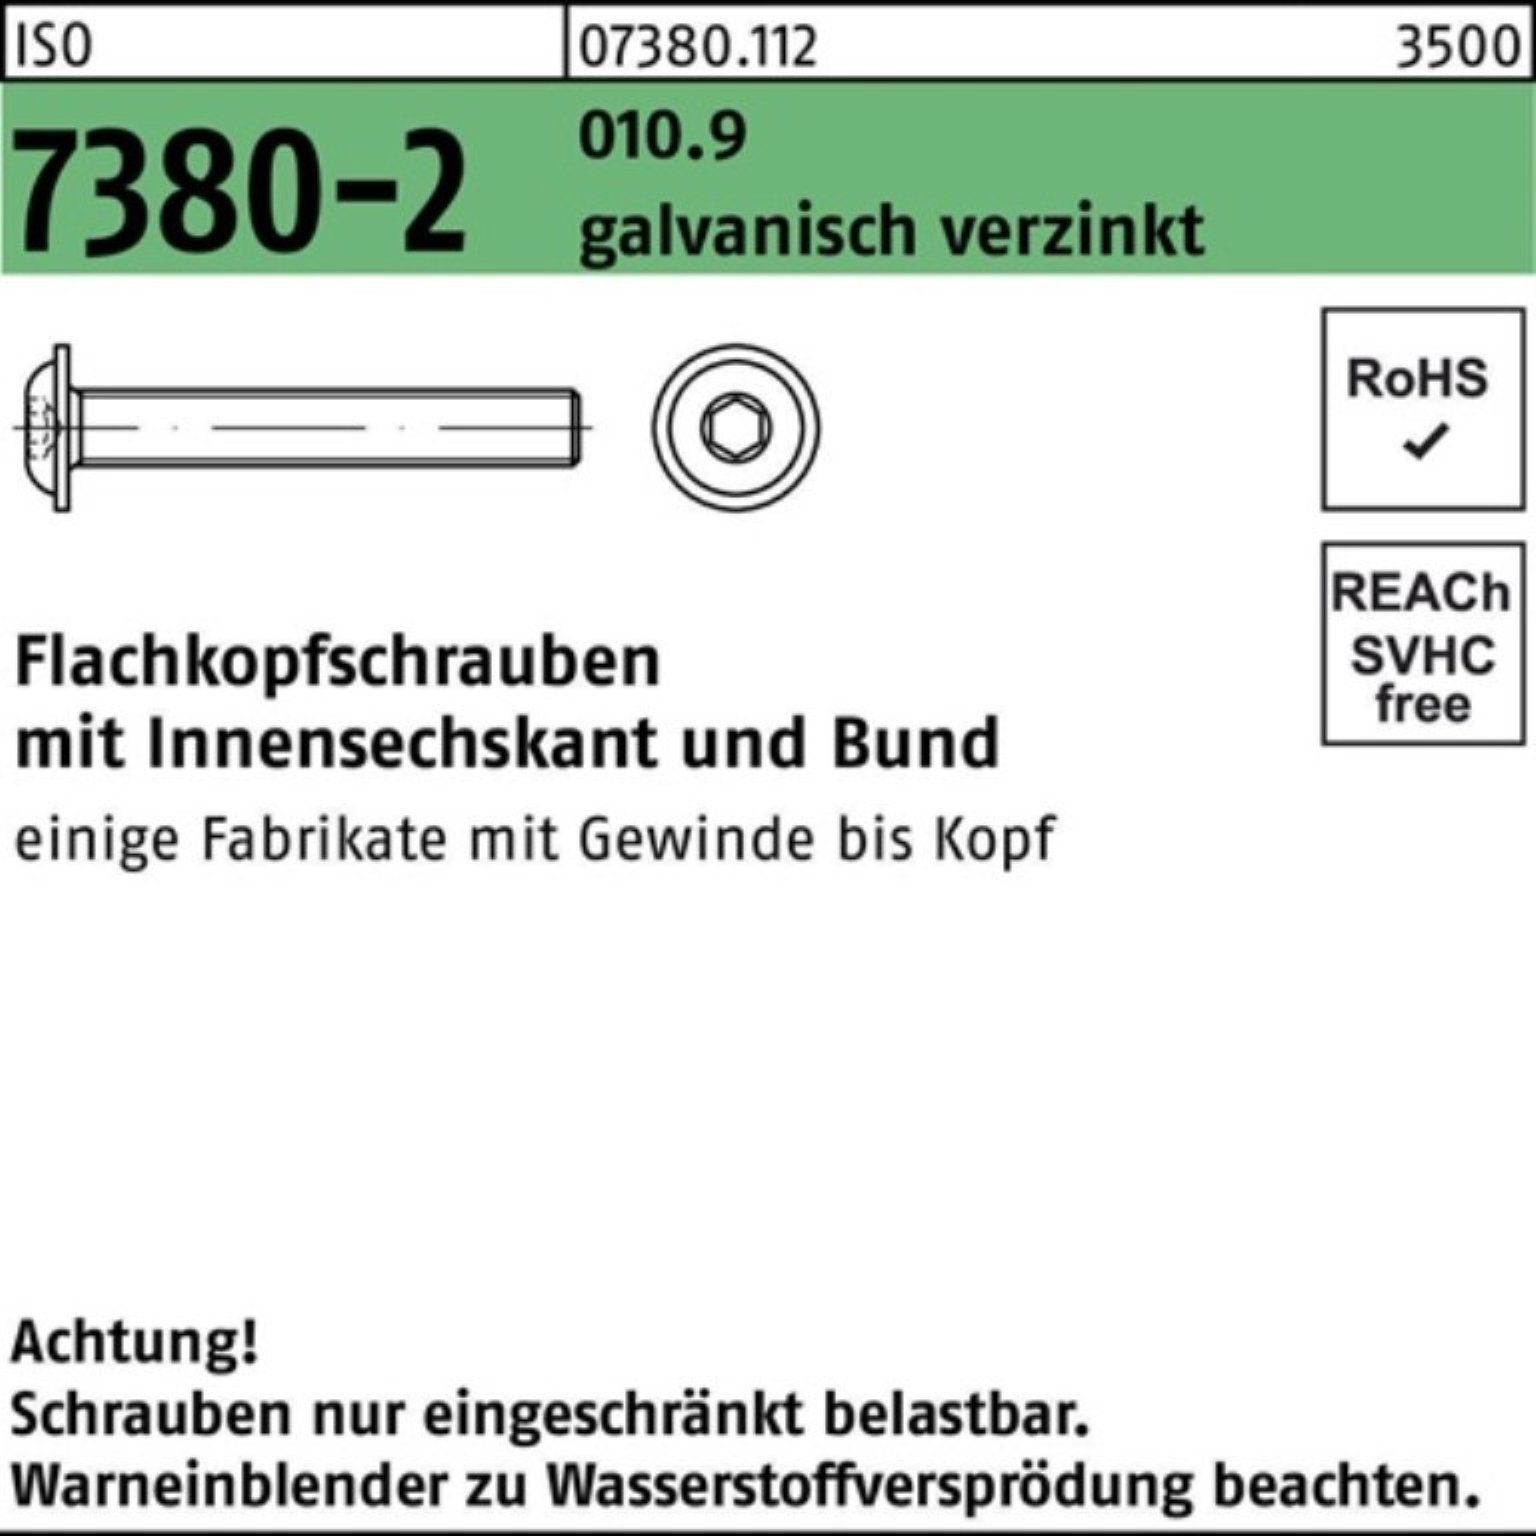 Reyher Schraube 100er Pack Flachkopfschraube ISO 7380-2 Bund/Innen-6kt M12x25 010.9 ga